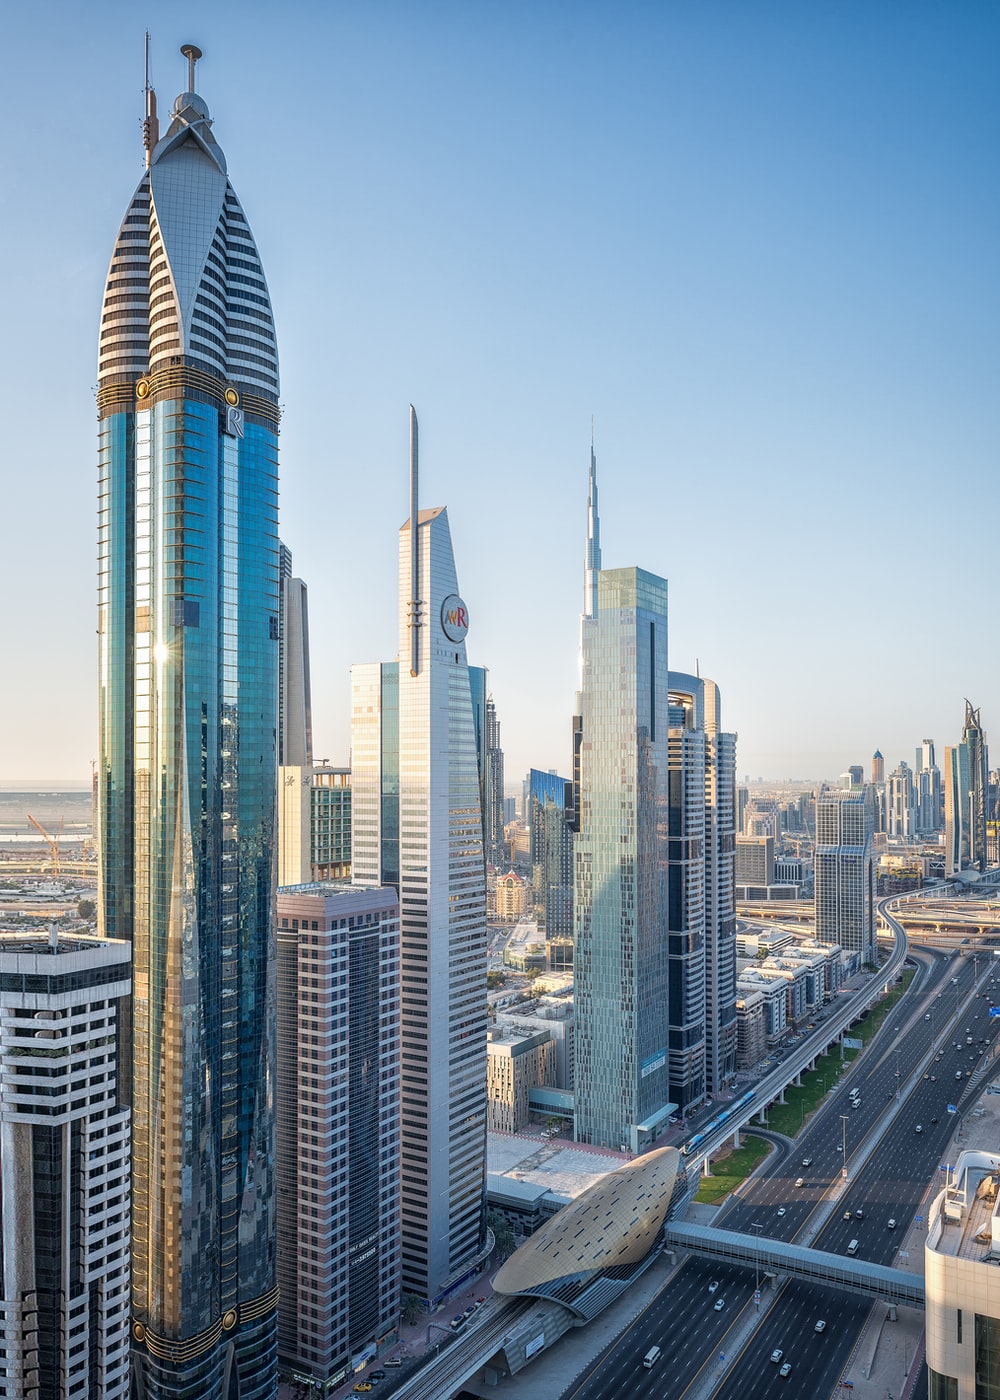 Dubai Skyscraper Picture. Download Free Image